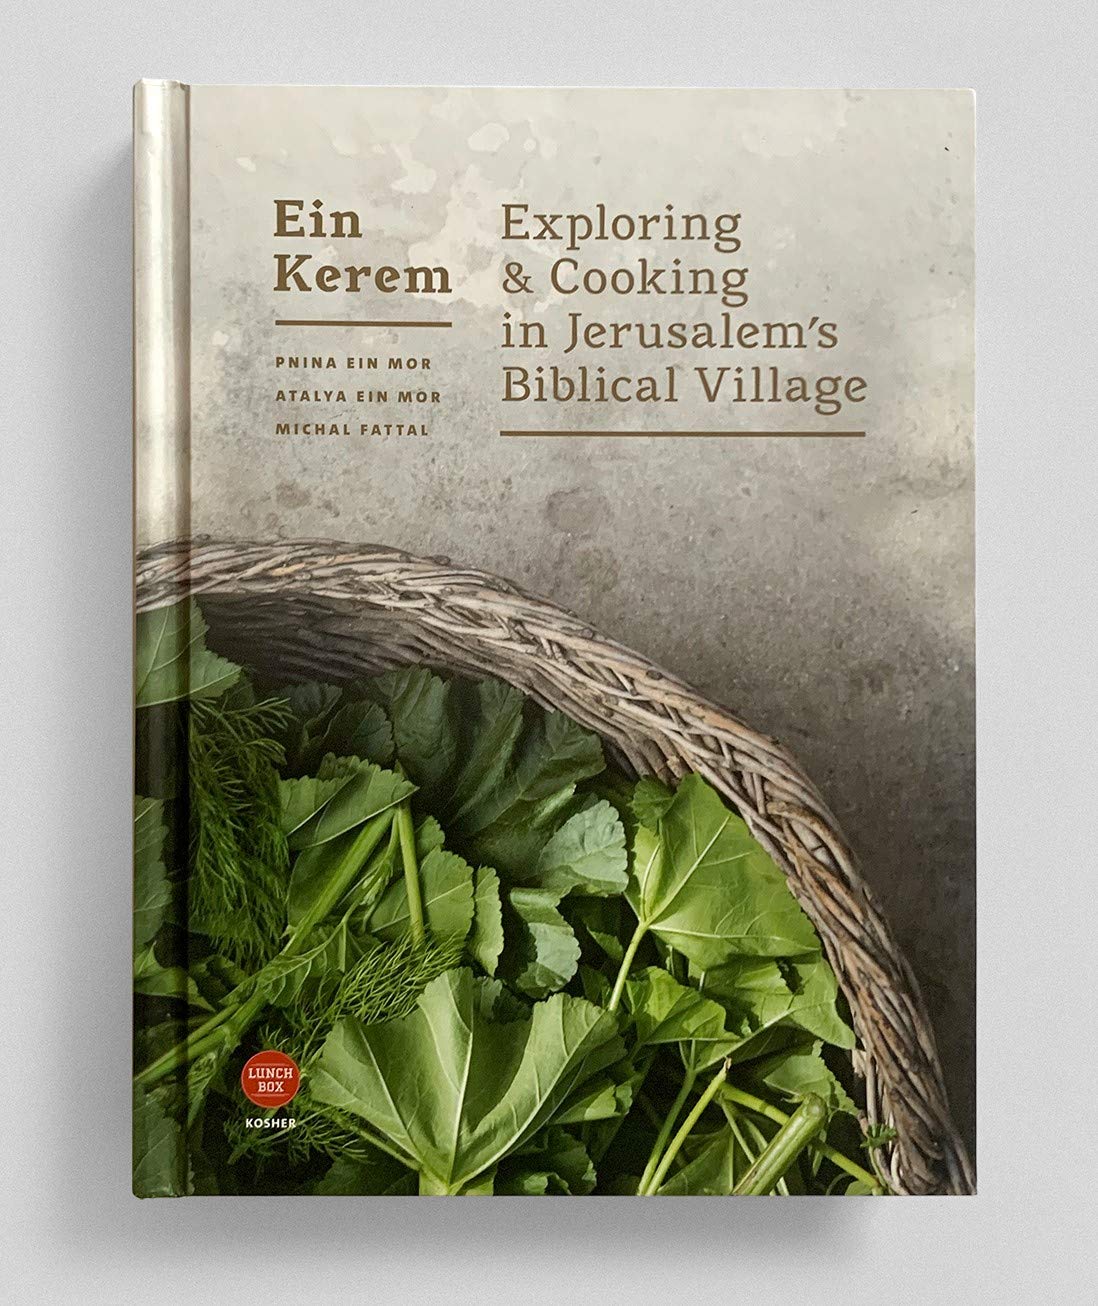 Ein Kerem: Exploring & Cooking in Jerusalem's Biblical Village (Pnina Ein Mor, Atalya Ein Mor & Michal Fattal)